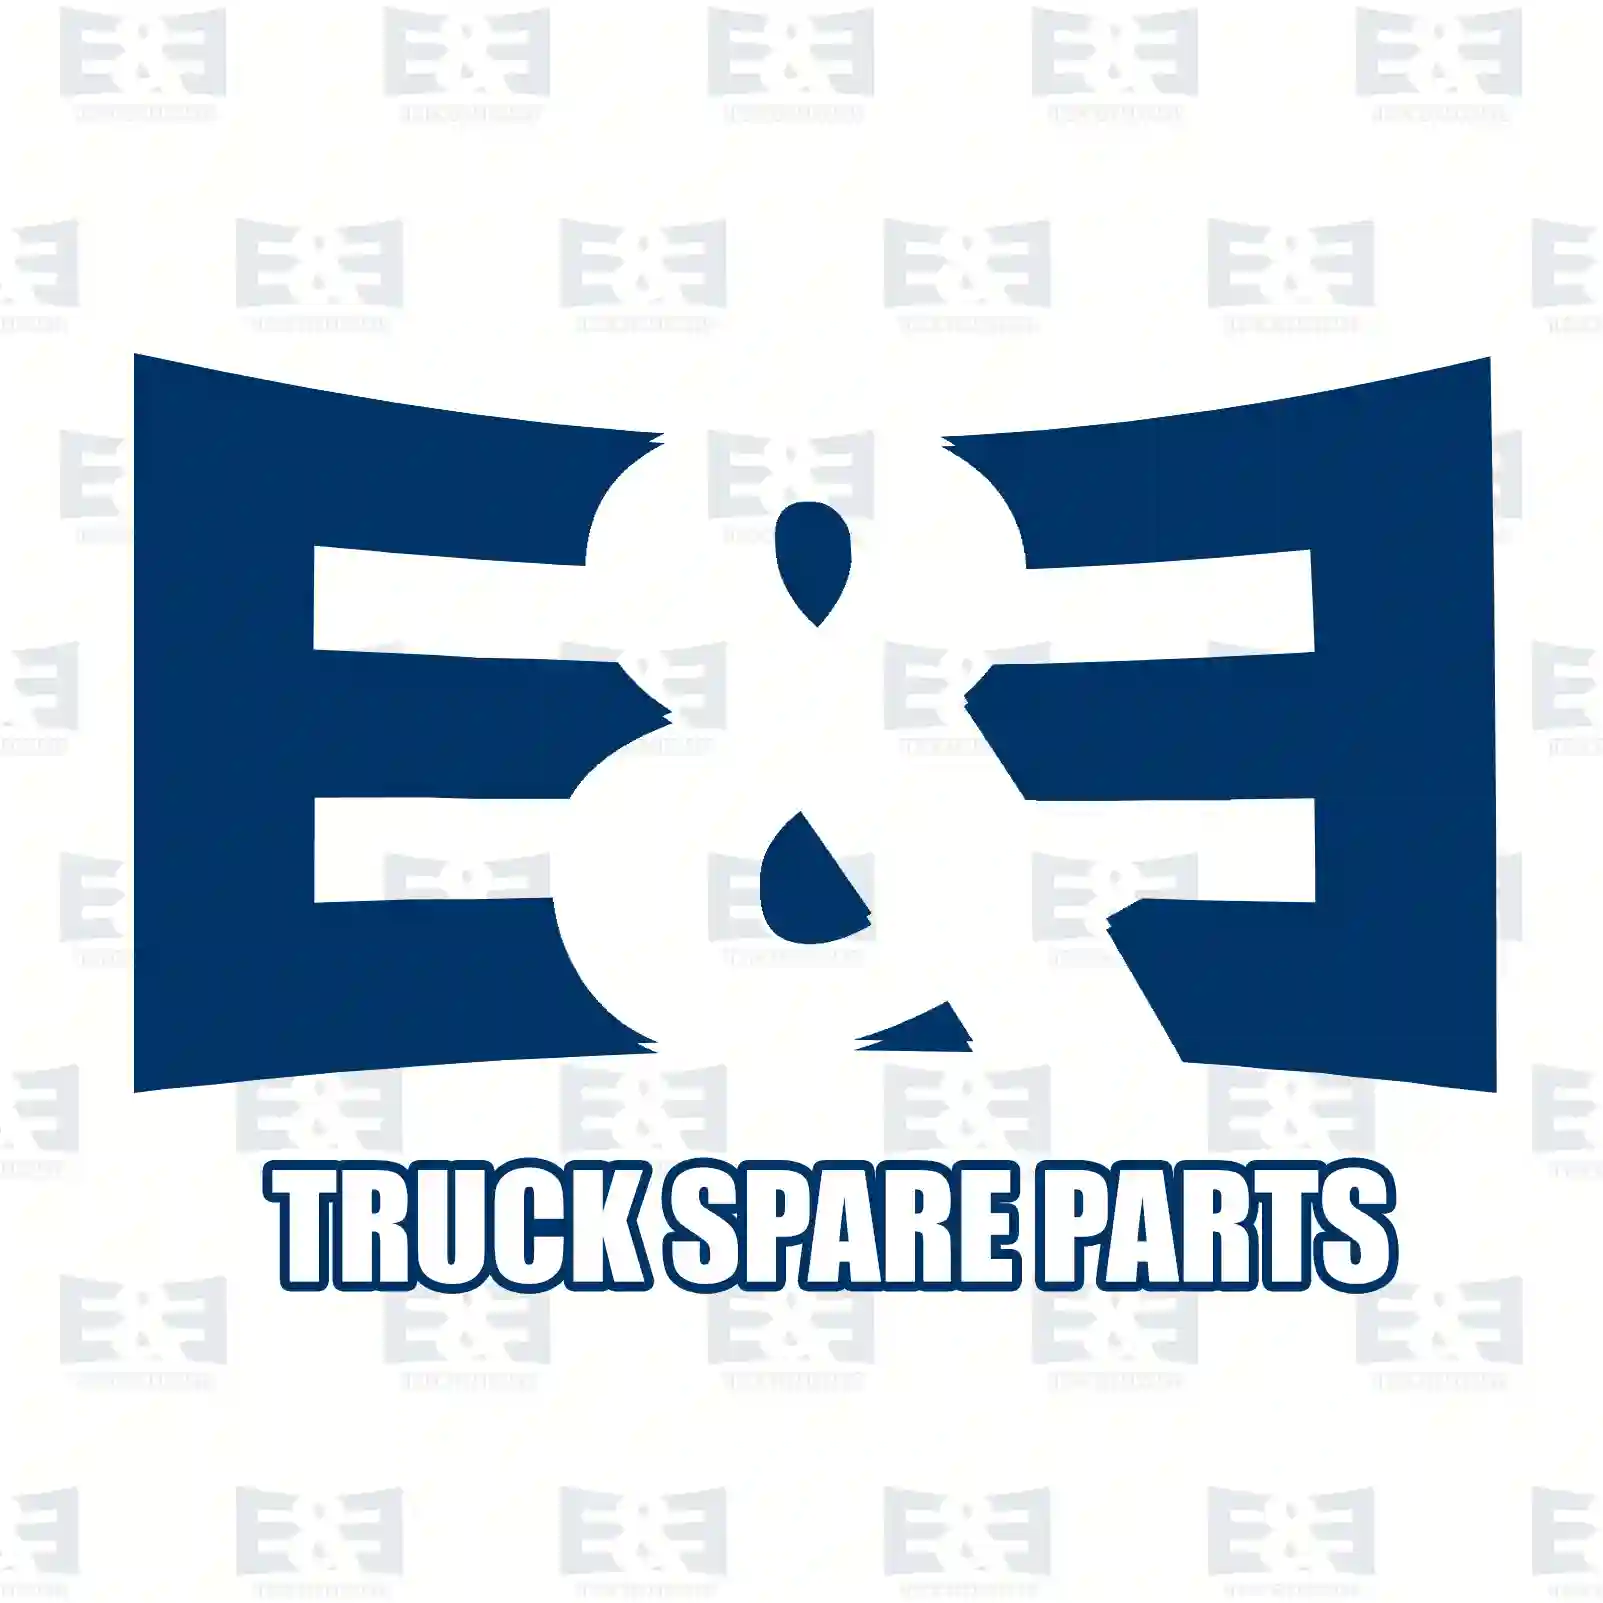 Oil seal, 2E2278972, 7420791305, 20791305, ZG02644-0008 ||  2E2278972 E&E Truck Spare Parts | Truck Spare Parts, Auotomotive Spare Parts Oil seal, 2E2278972, 7420791305, 20791305, ZG02644-0008 ||  2E2278972 E&E Truck Spare Parts | Truck Spare Parts, Auotomotive Spare Parts